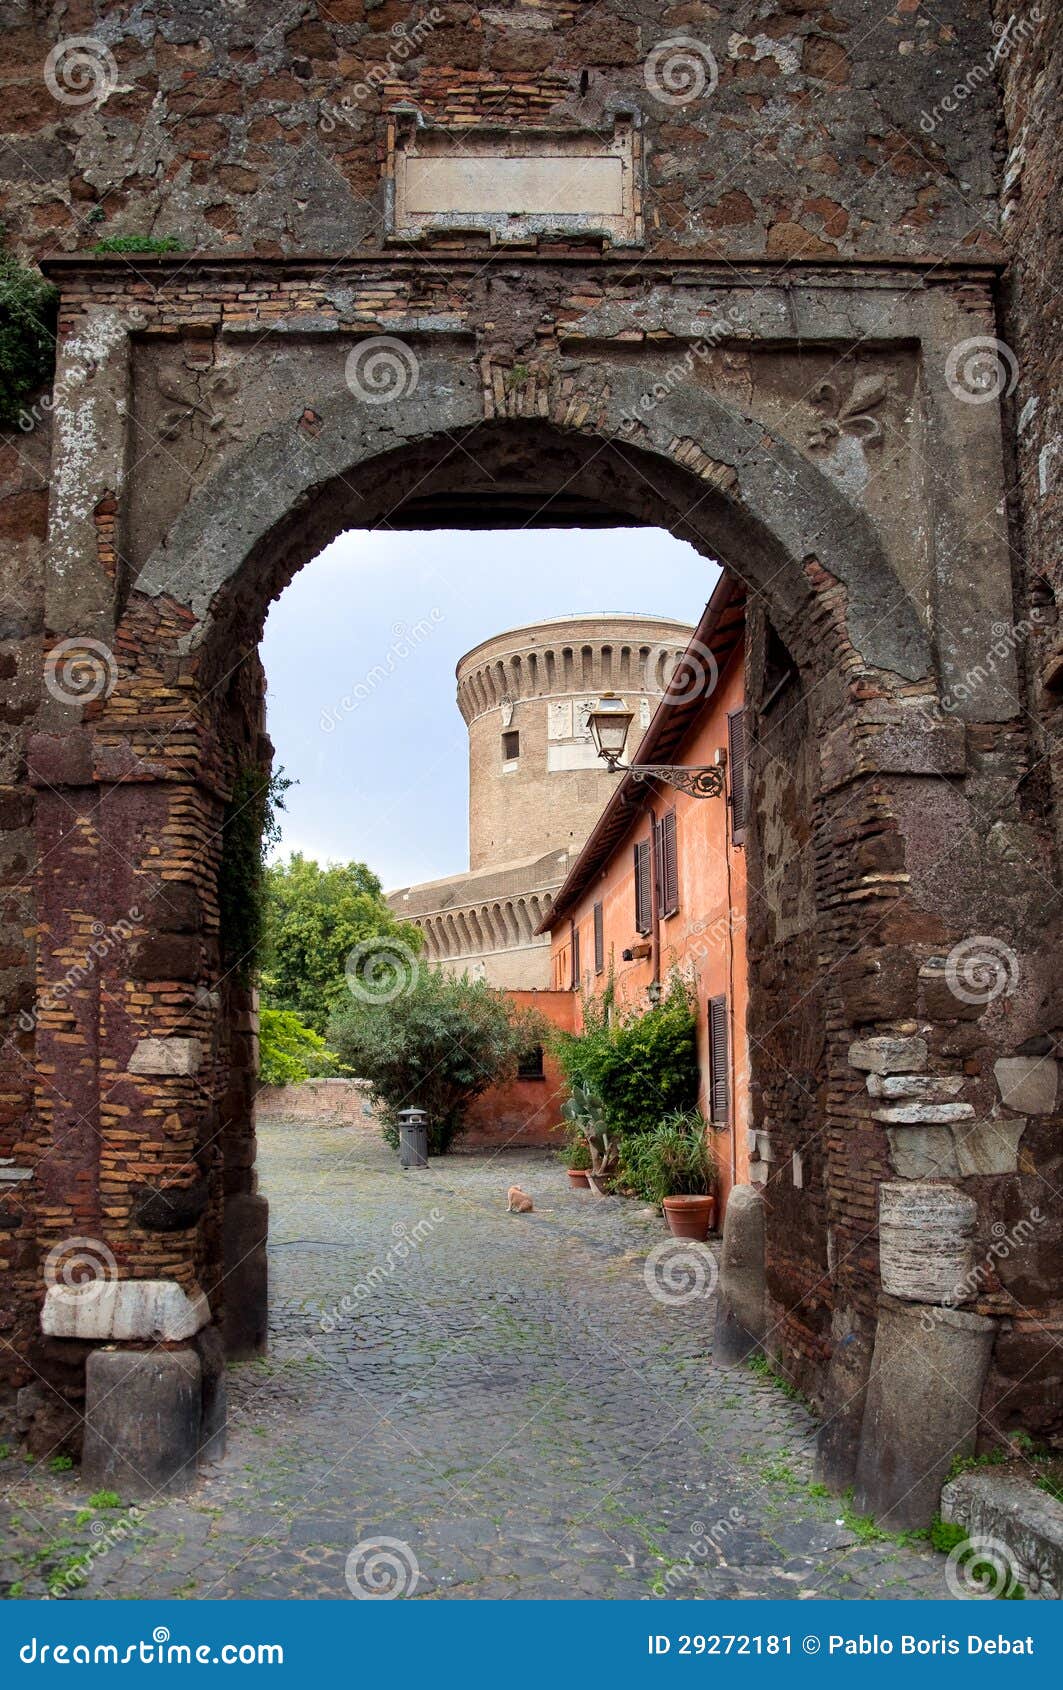 entrance to borgo di ostia antica and castello di giulio ii at r